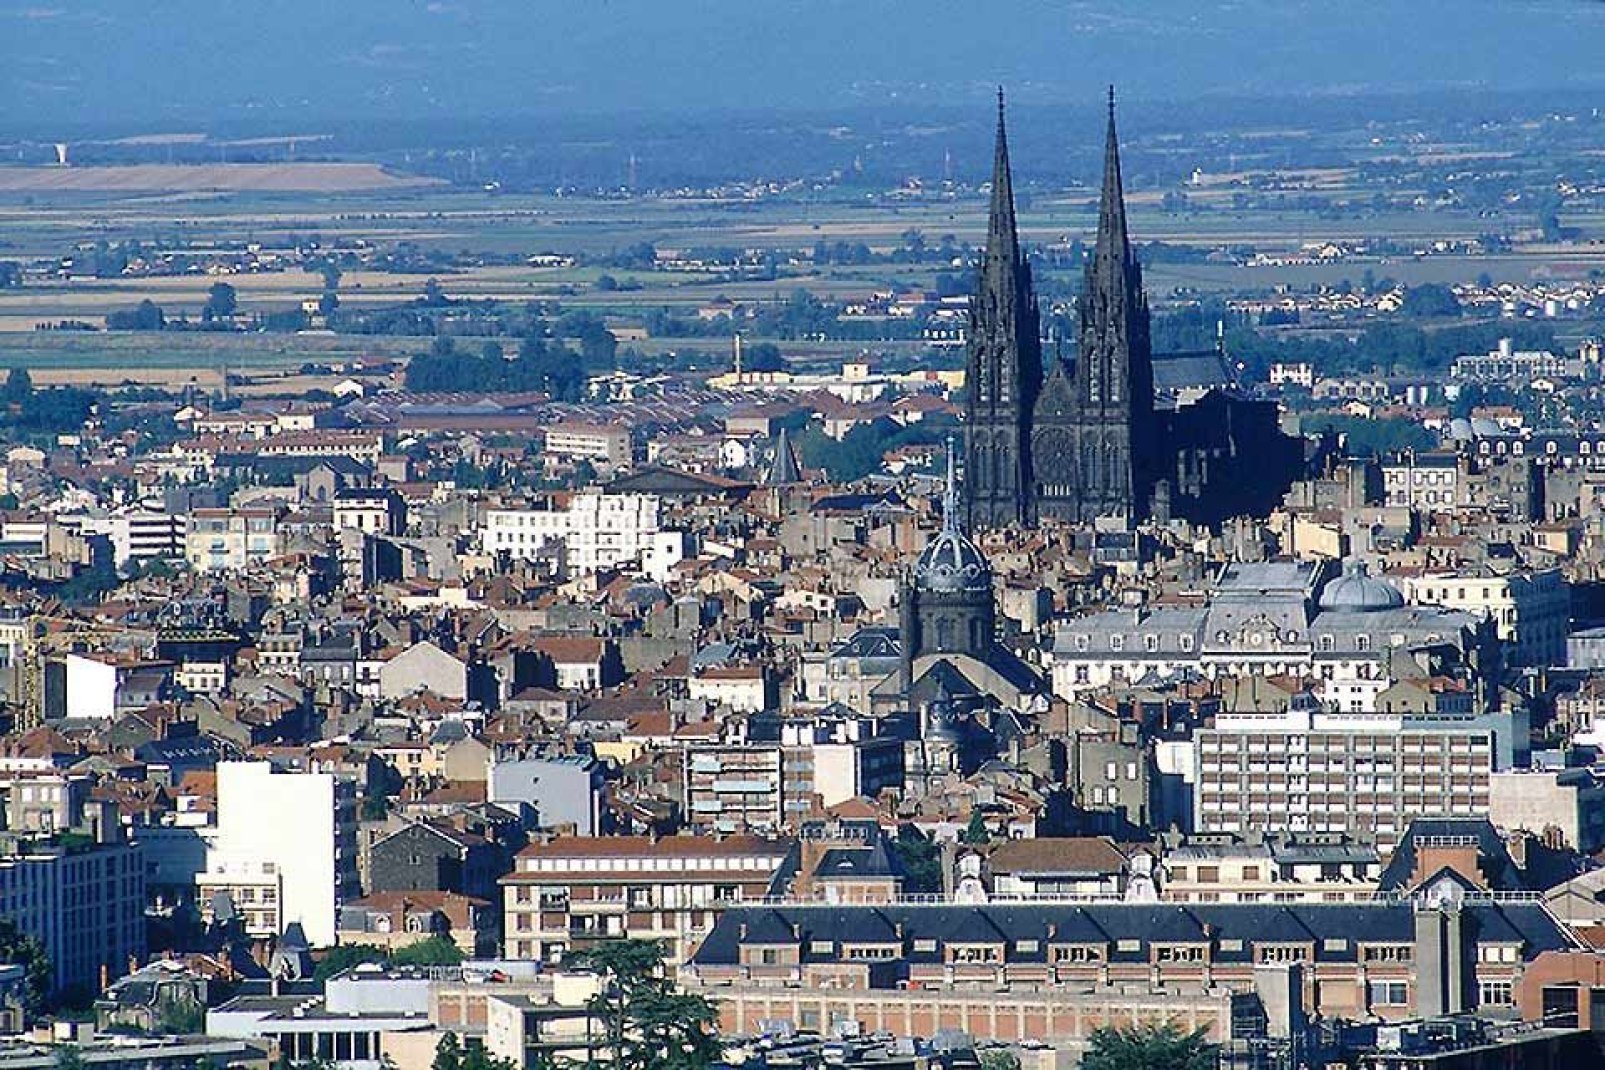 Situata al centro di montagne vulcaniche, Clermont-Ferrand svela i suoi quartieri medievali.